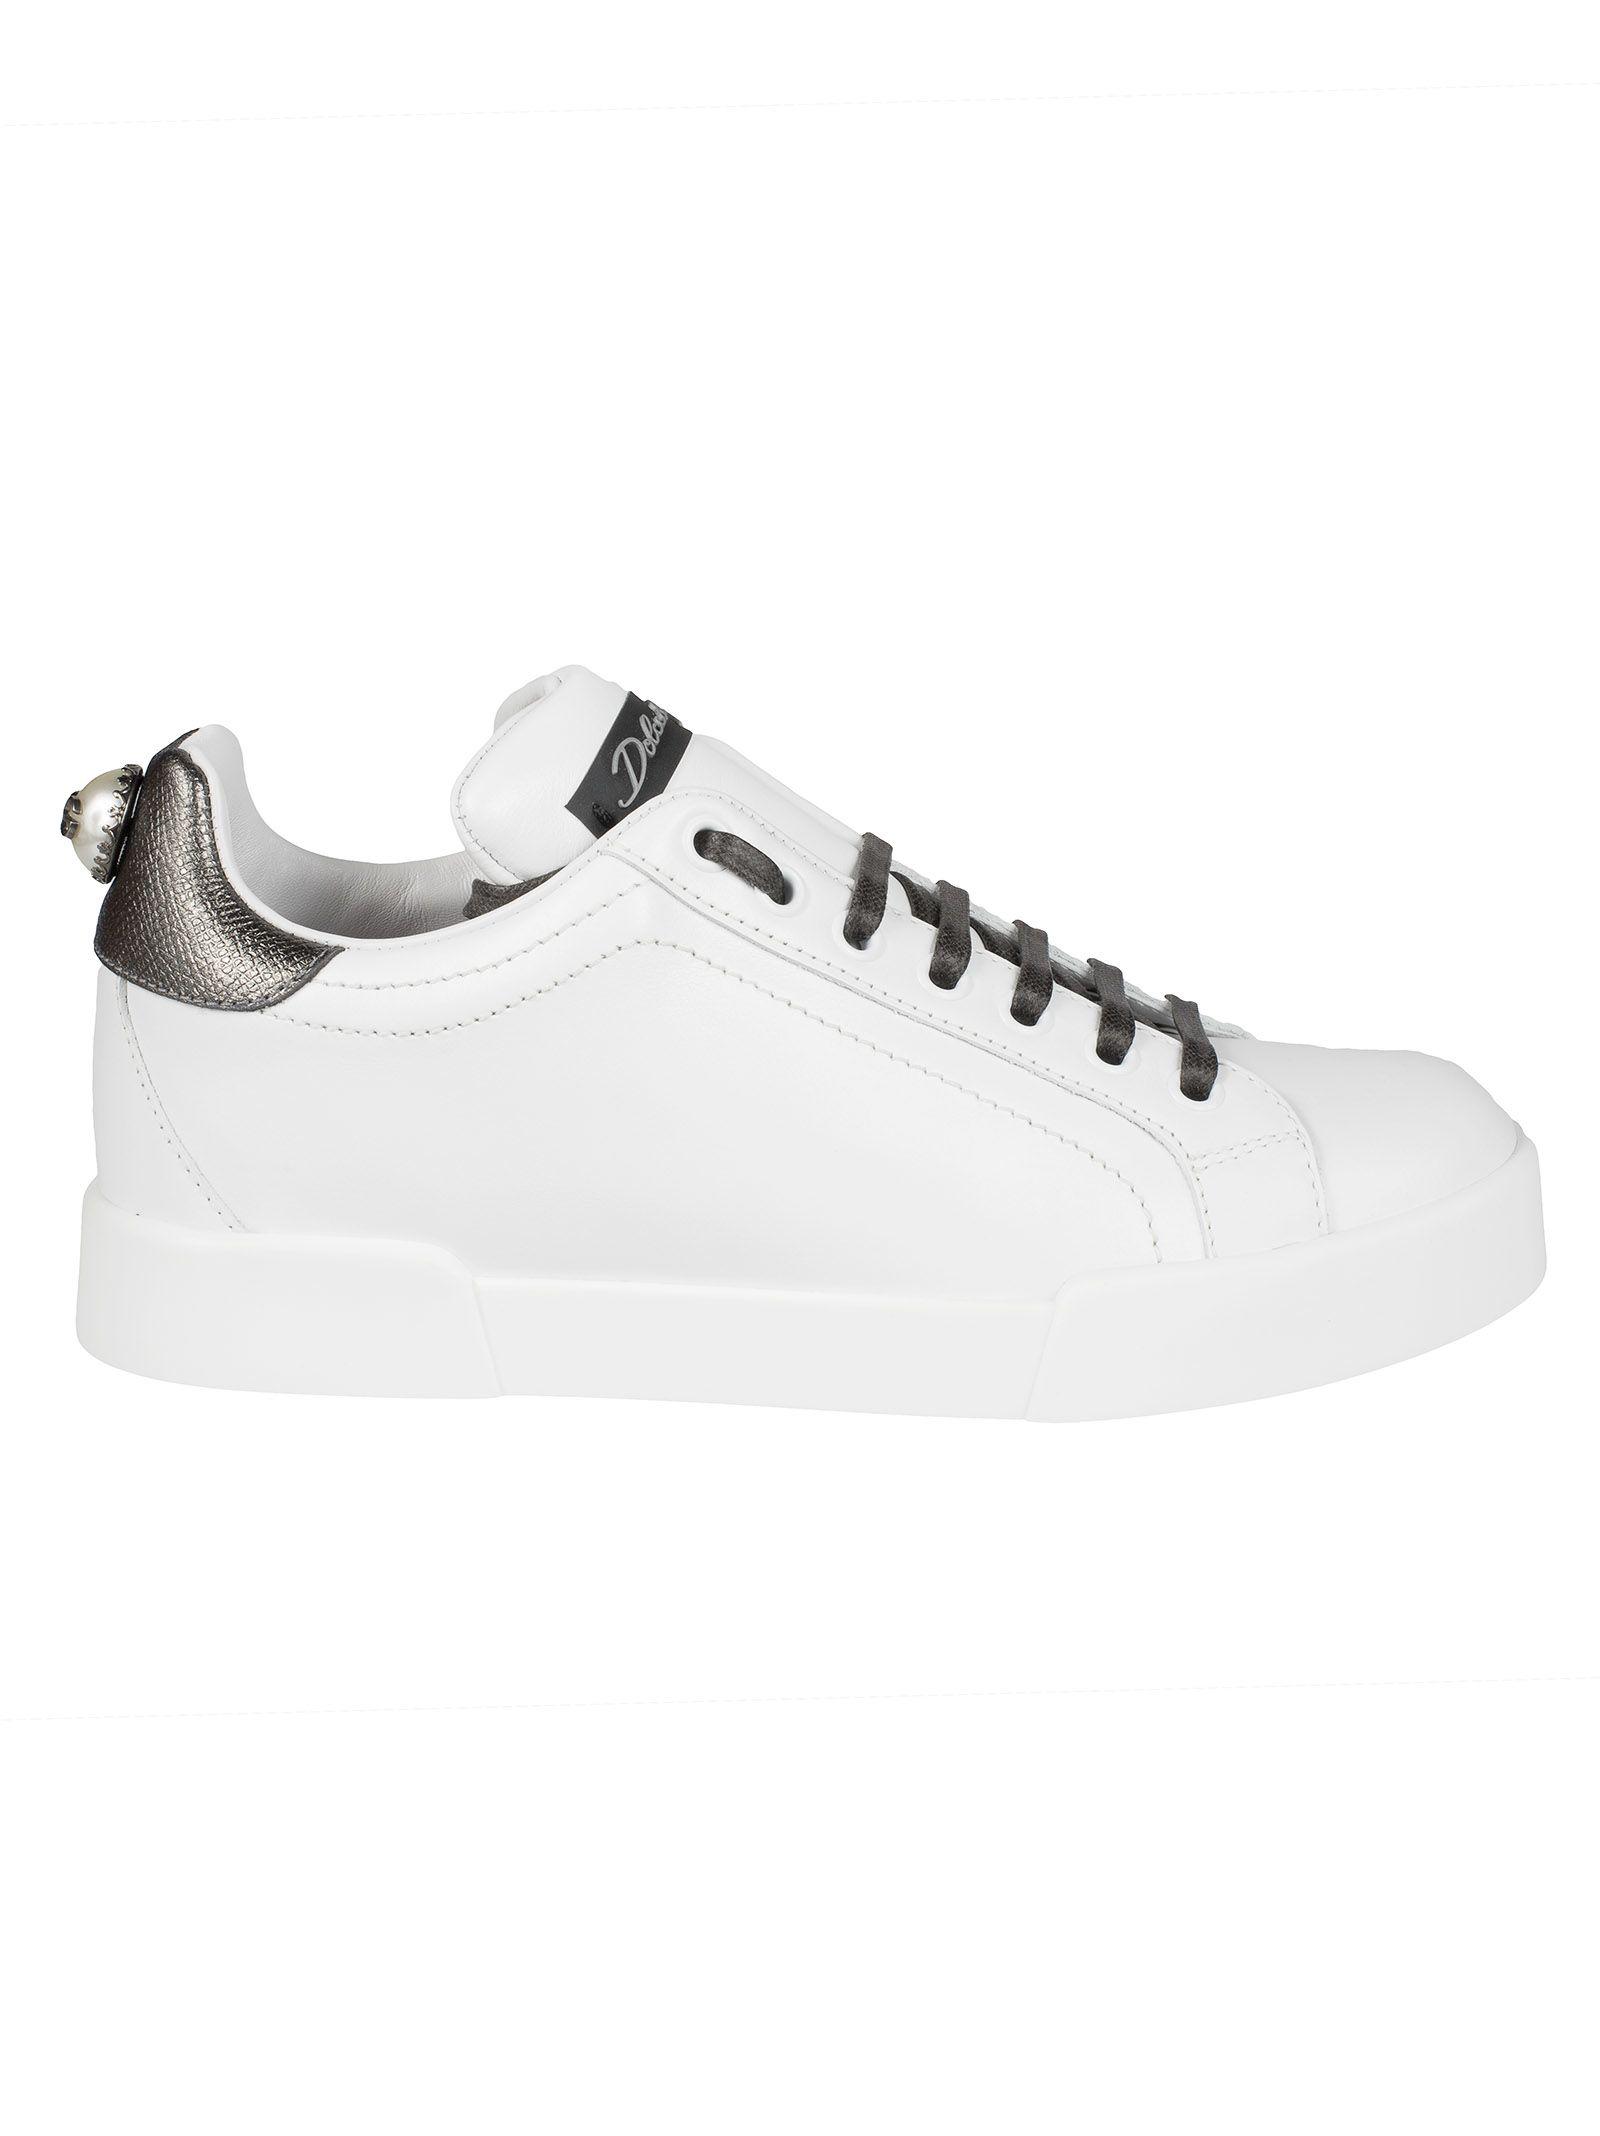 Dolce & Gabbana Portofino Sneakers In White-silver | ModeSens